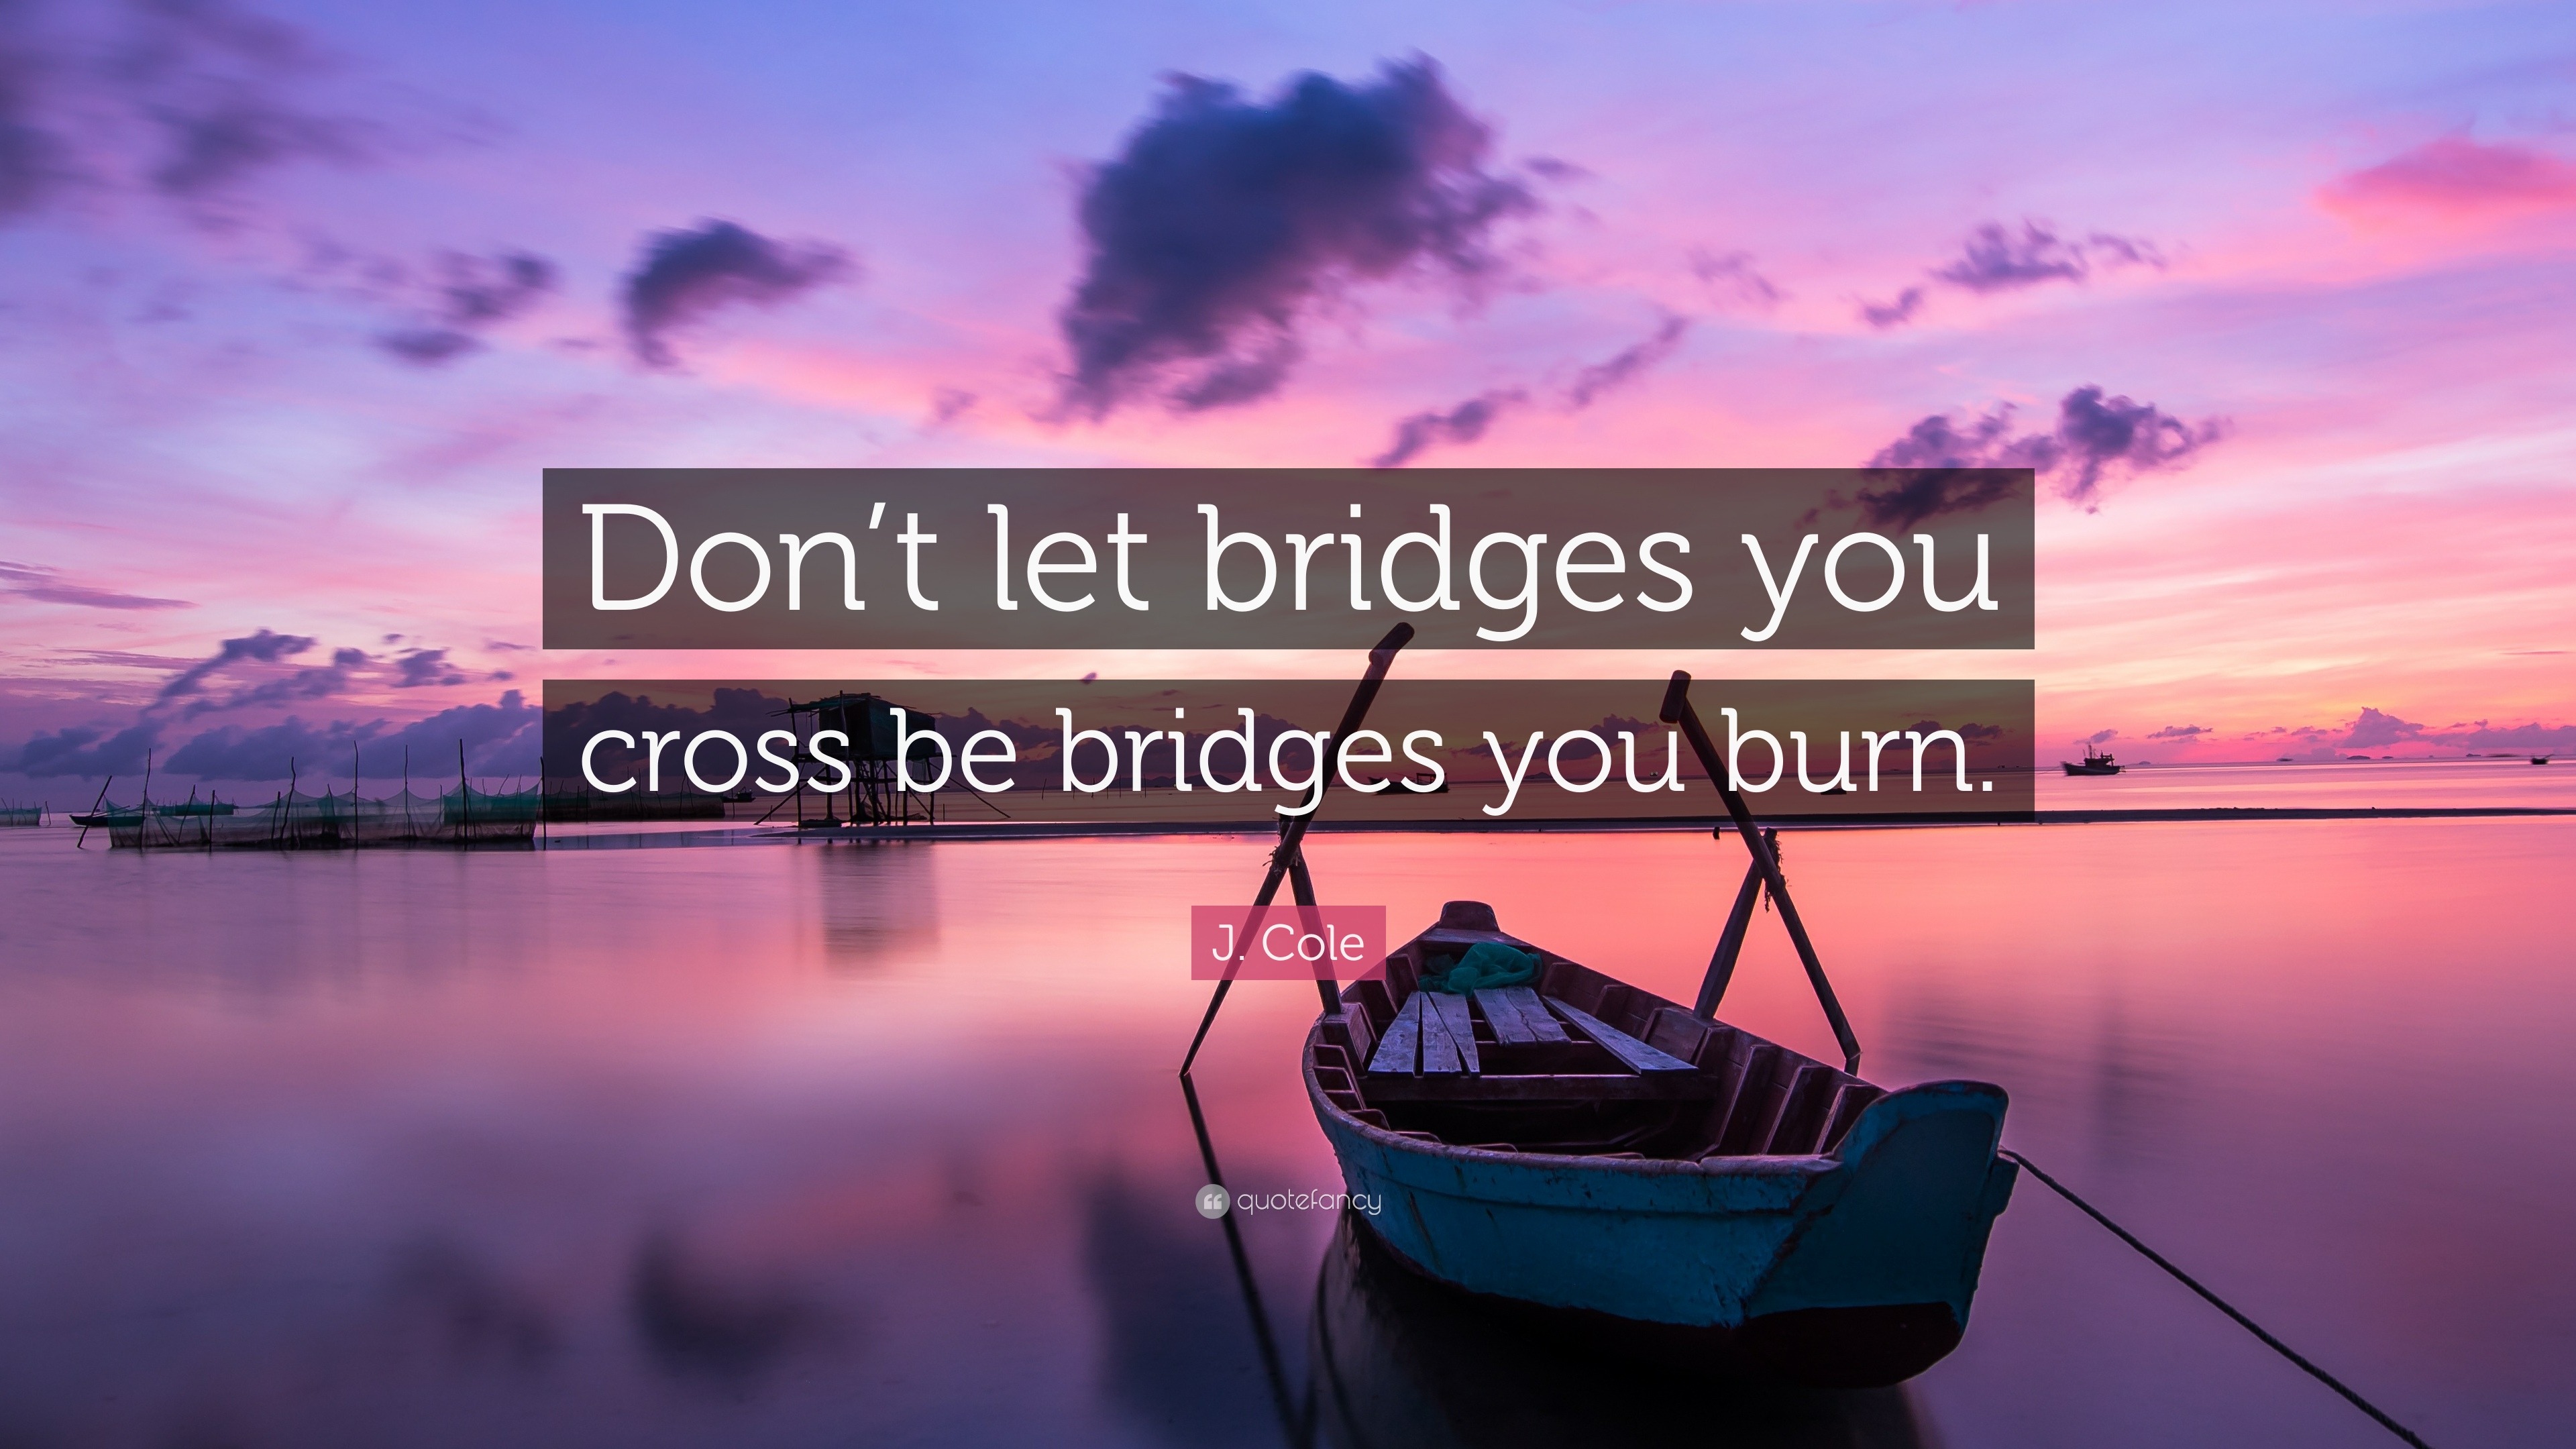 J. Cole Quote: “Don’t let bridges you cross be bridges you burn.”